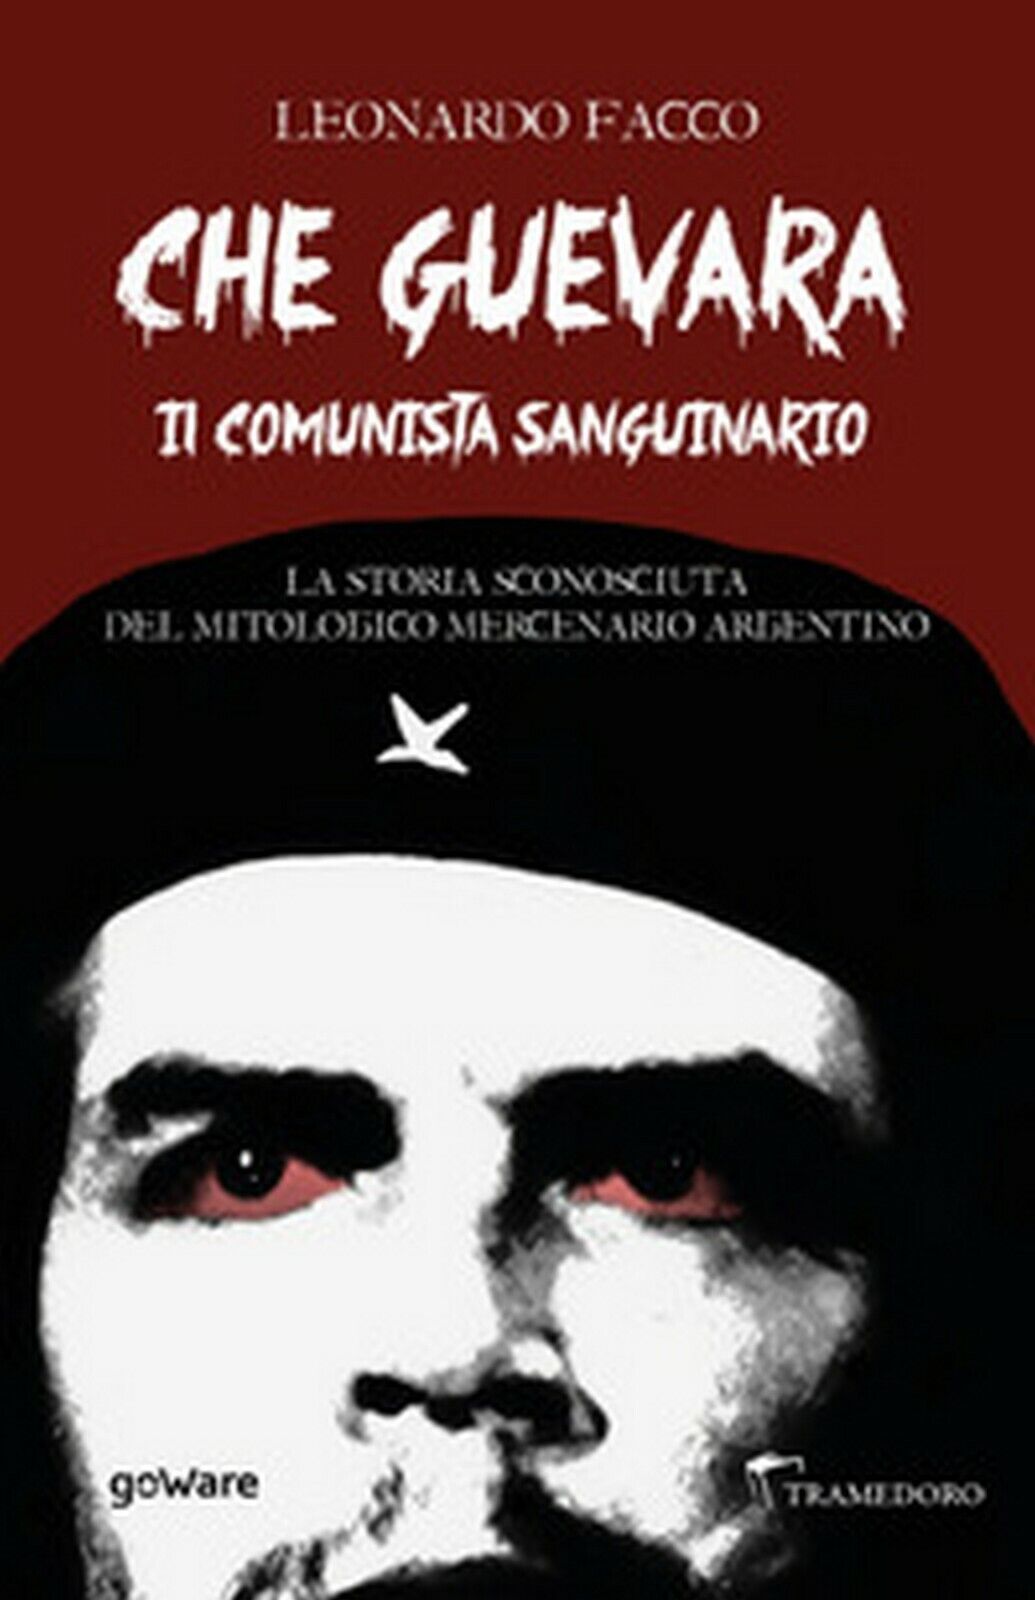 Che Guevara il comunista sanguinario. La storia sconosciuta del mitologico merce